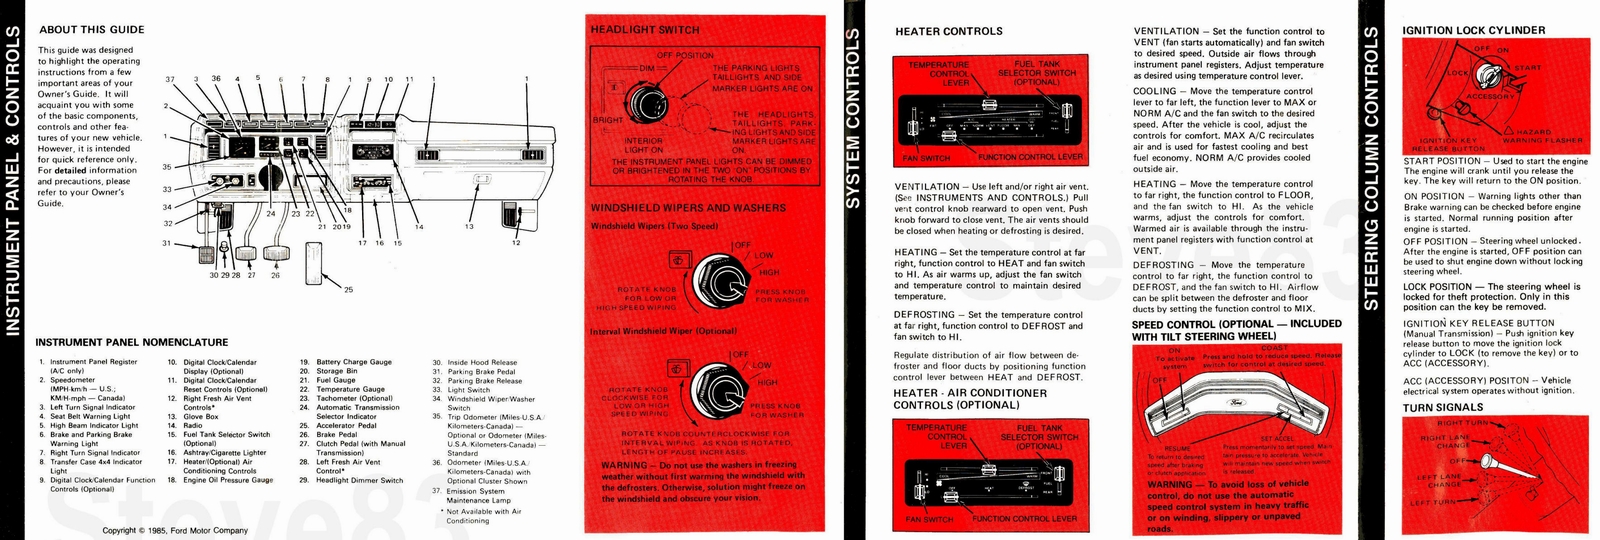 n_1986 Ford F-150 Operating Guide-02.jpg